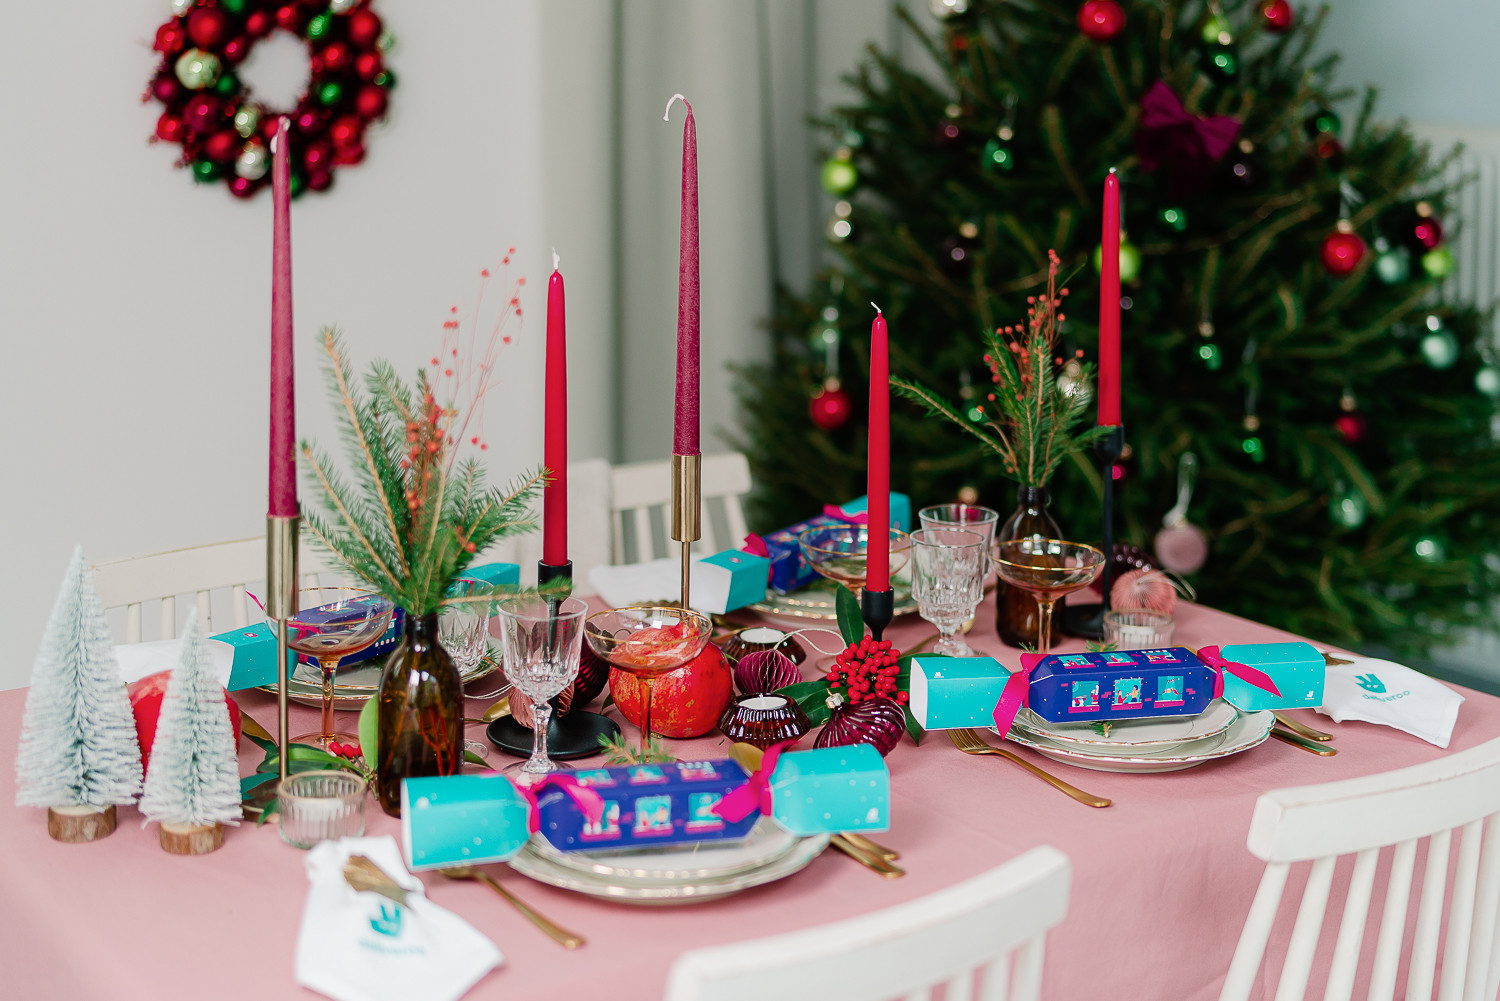 Ten voordele van Stichting Pelicano verkoopt bezorgservice Deliveroo Christmas Crackers, hét must have cadeau om jouw feesttafel mee te versieren!